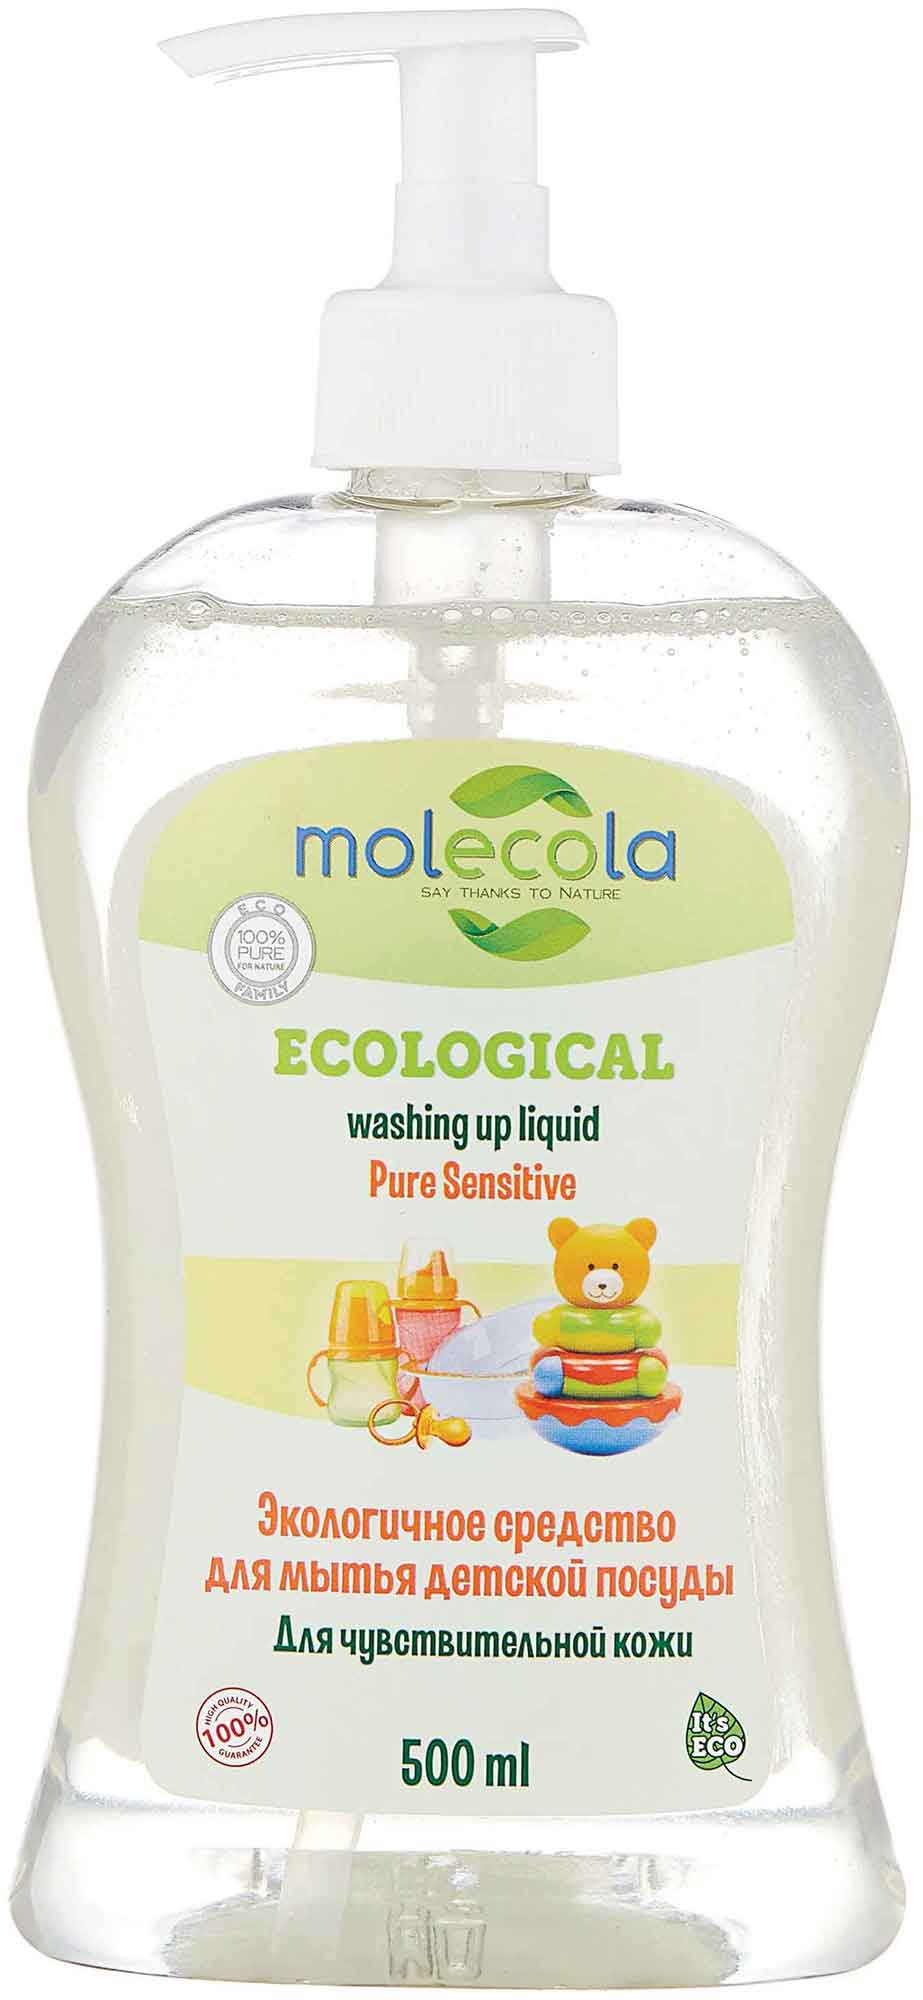 Средство для мытья детской посуды для чувствительной кожи MOLECOLA экологическое, 500мл Средство для мытья детской посуды для чувствительной кожи MOLECOLA  экологическое, 500мл